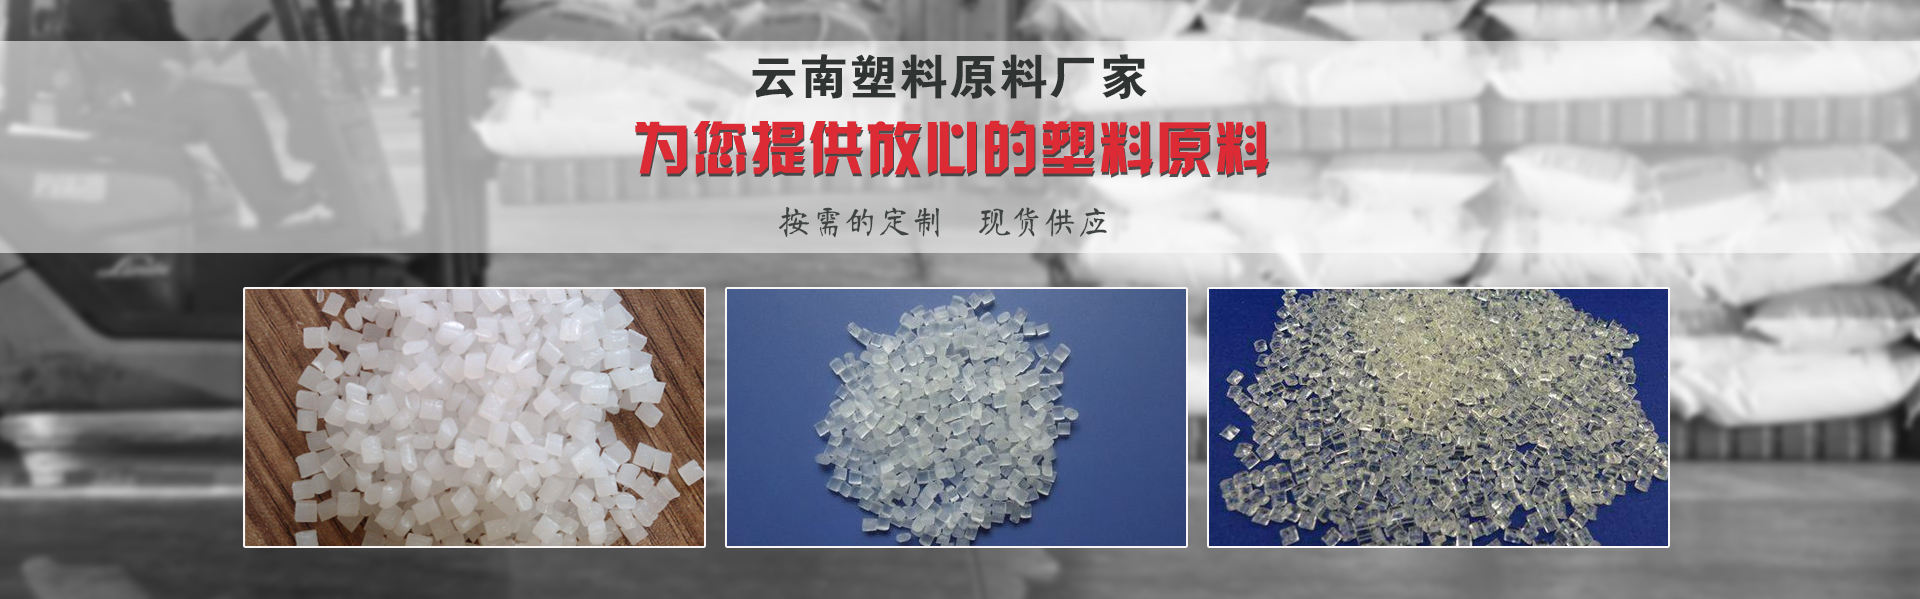 云南塑料原料厂家介绍常见的四种塑料原料以及用途